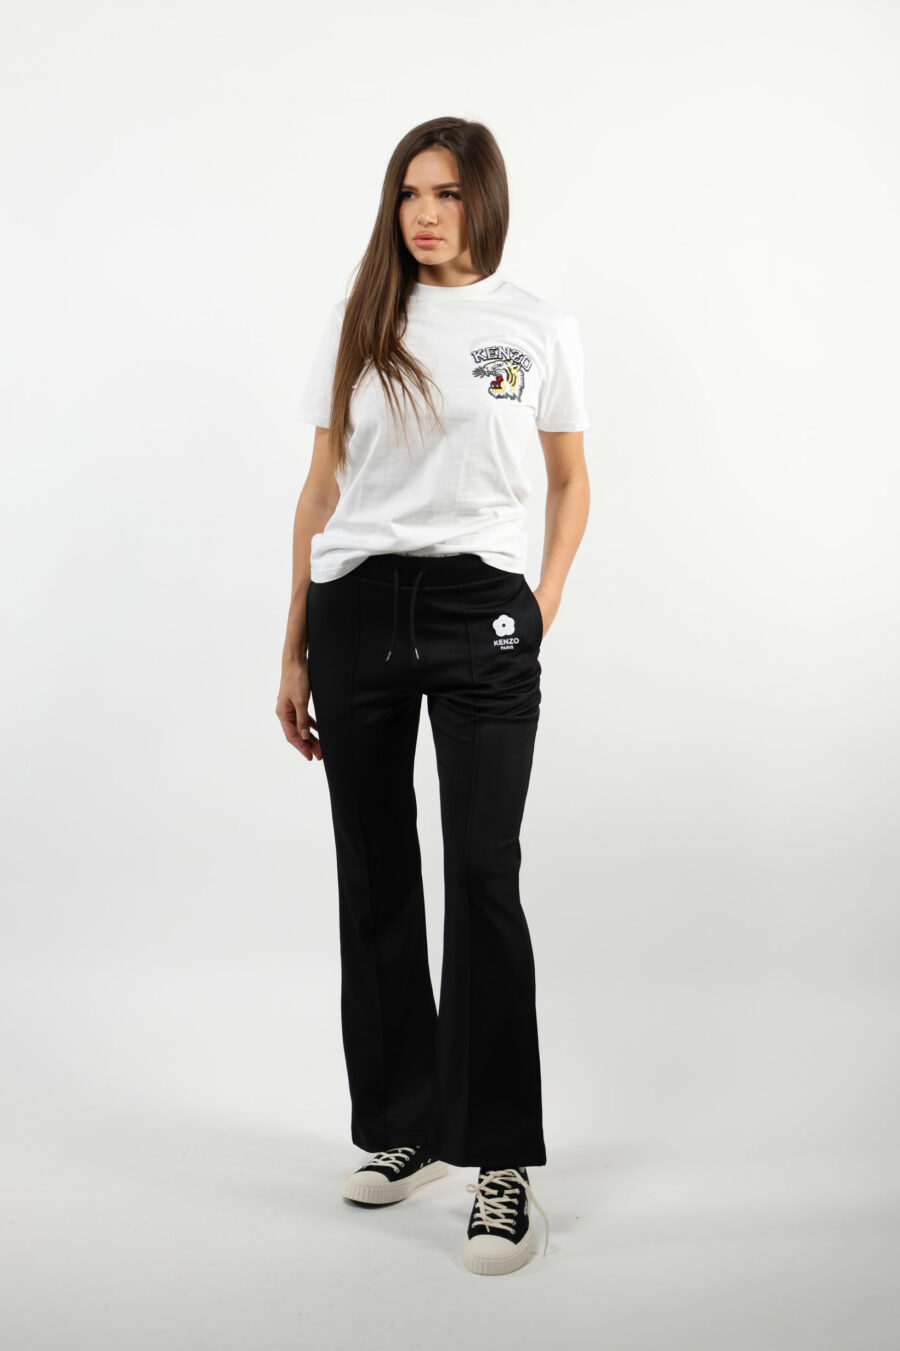 Pantalón de chándal negro con minilogo "boke flower" blanco - 109500